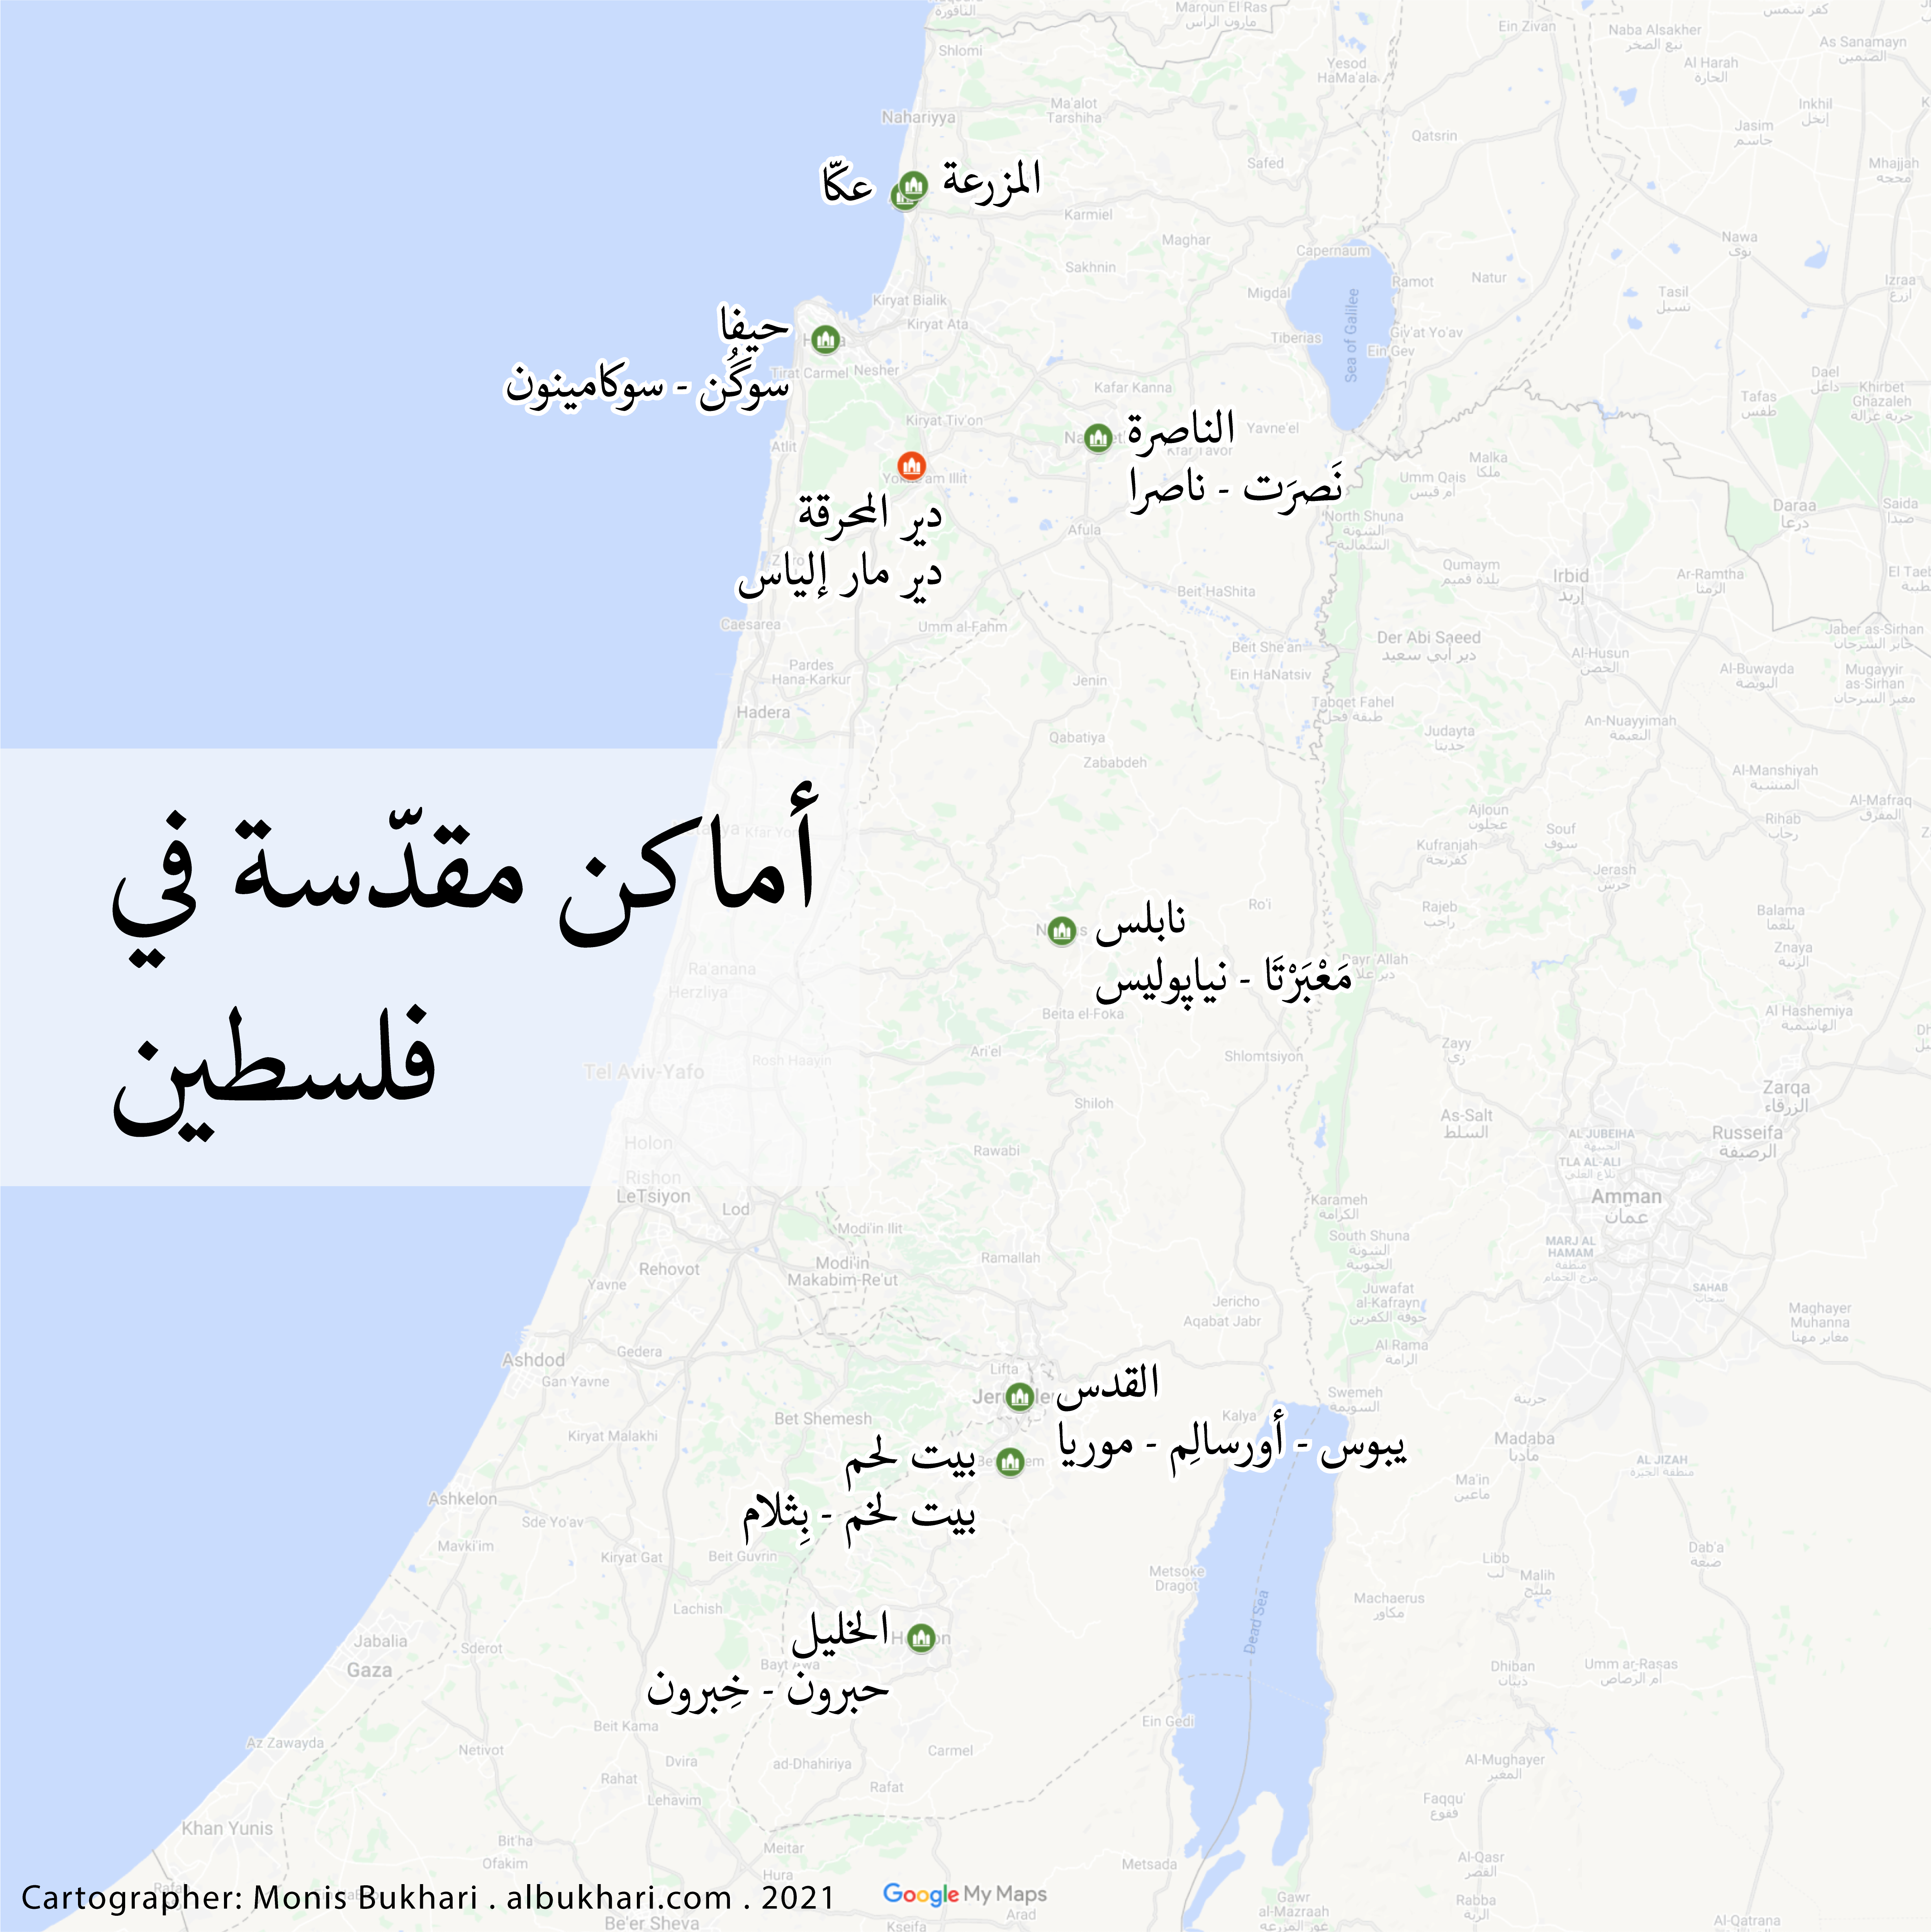 خريطة أماكن مقدّسة في فلسطين